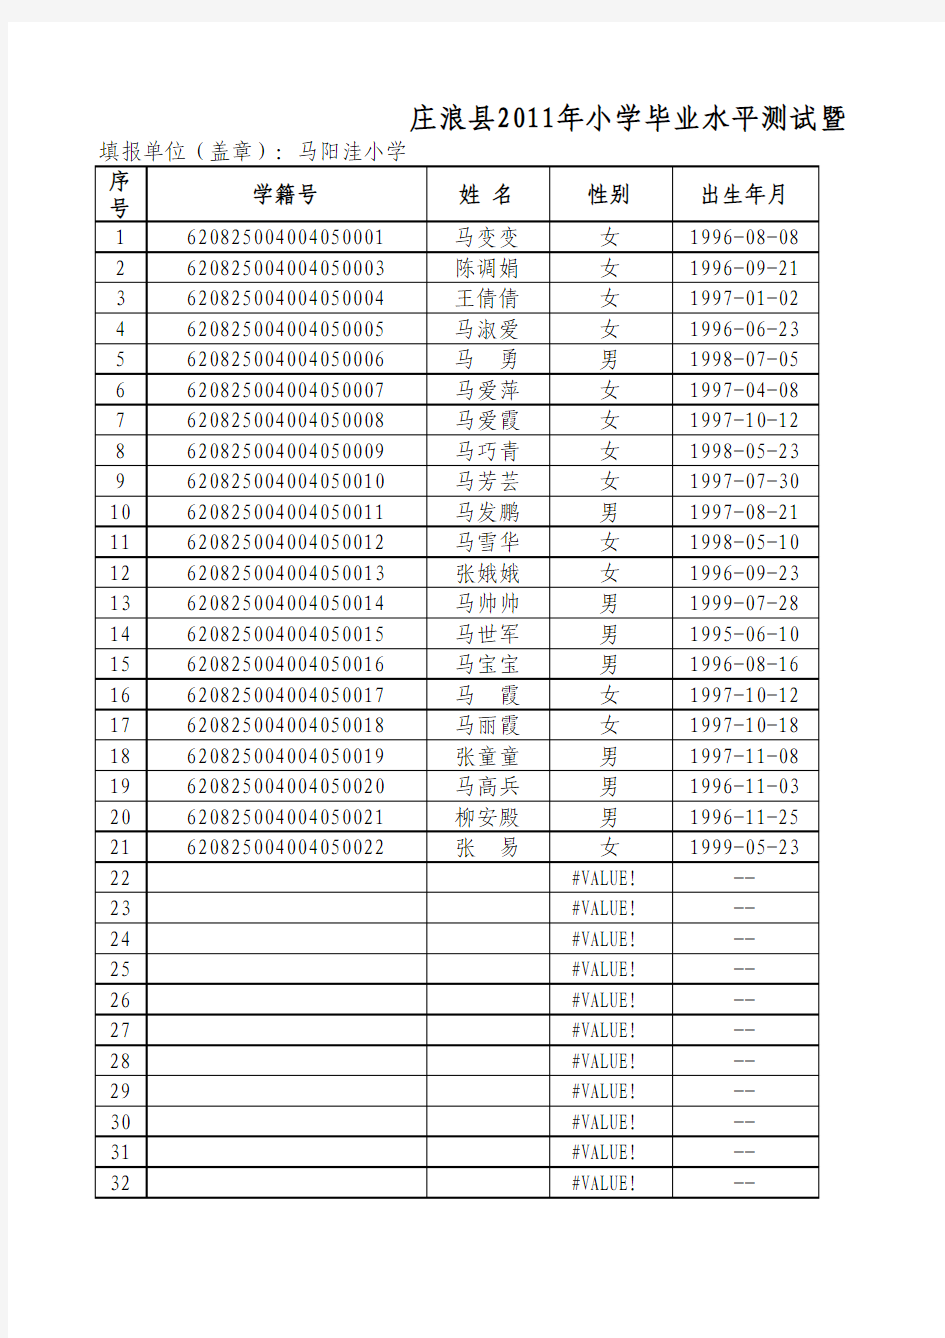 马阳屲小学2011年小学毕业水平测试暨初中招生报名登记表